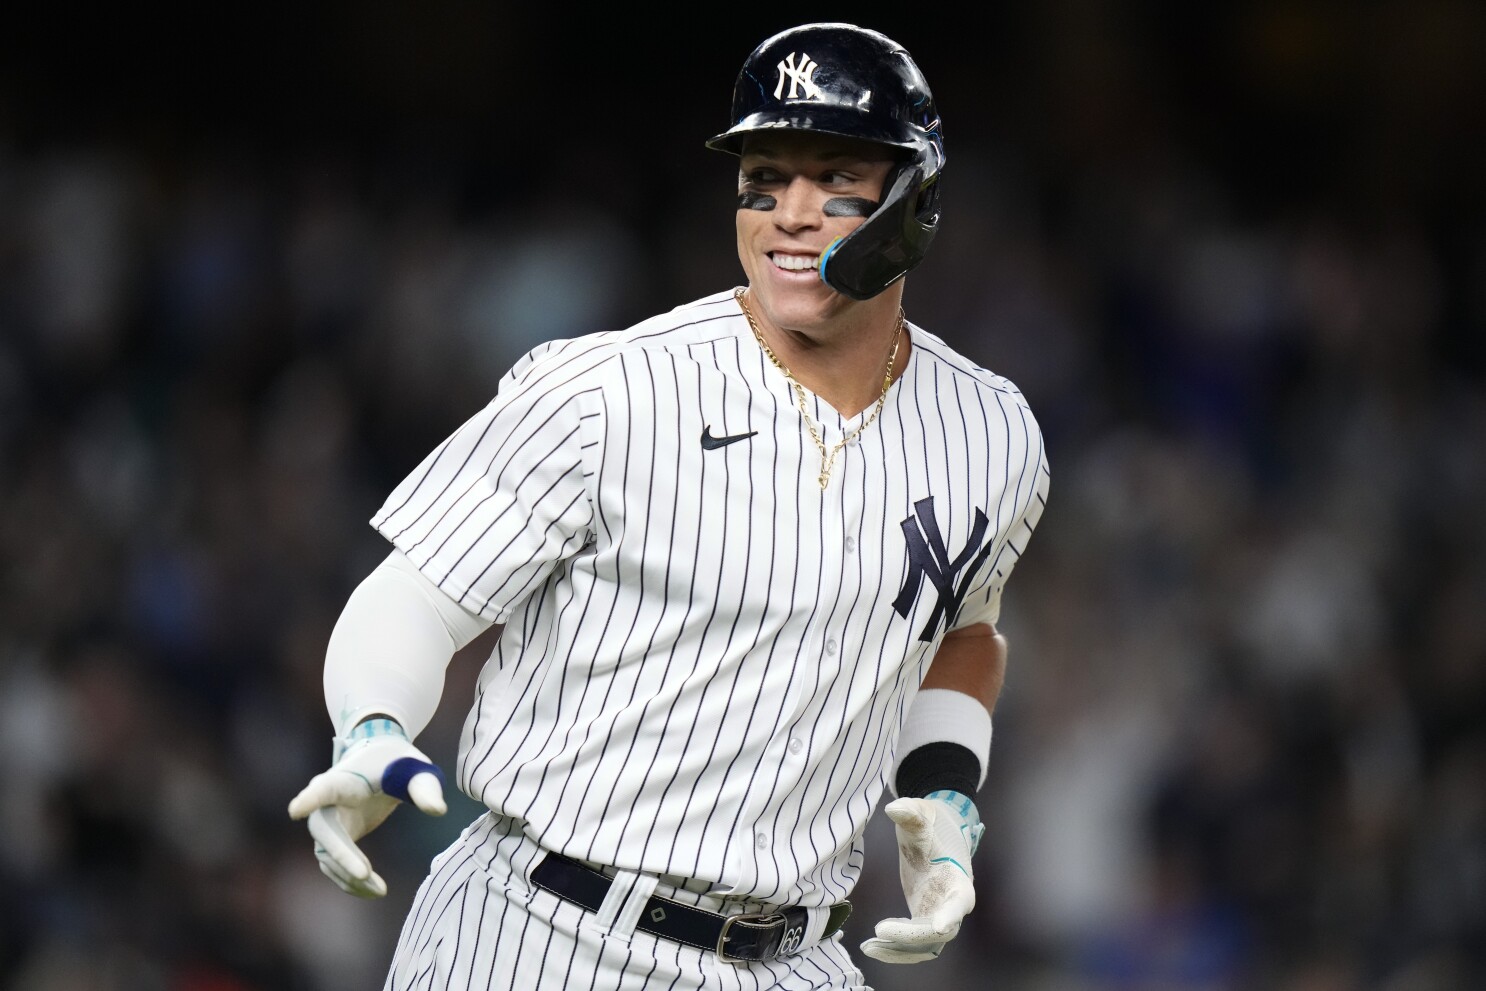 Judge hits 42nd homer, Yankees beat Royals 8-2